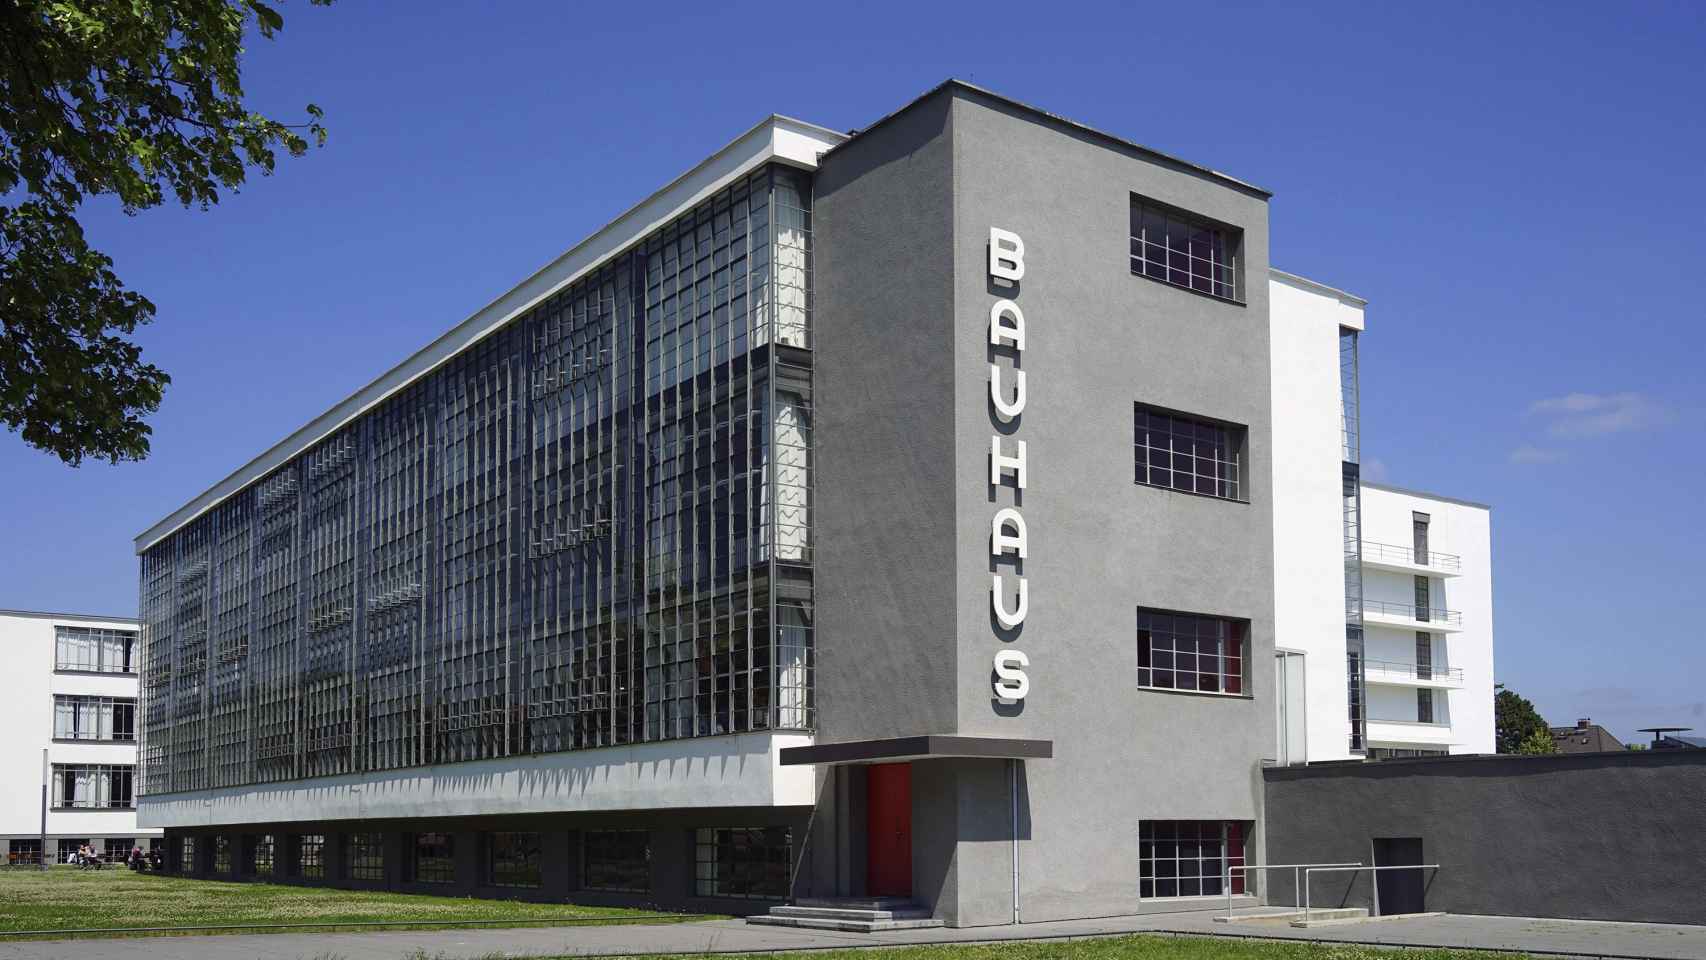 La mítica escuela Bauhaus en Dessau / Yolanda Cardo